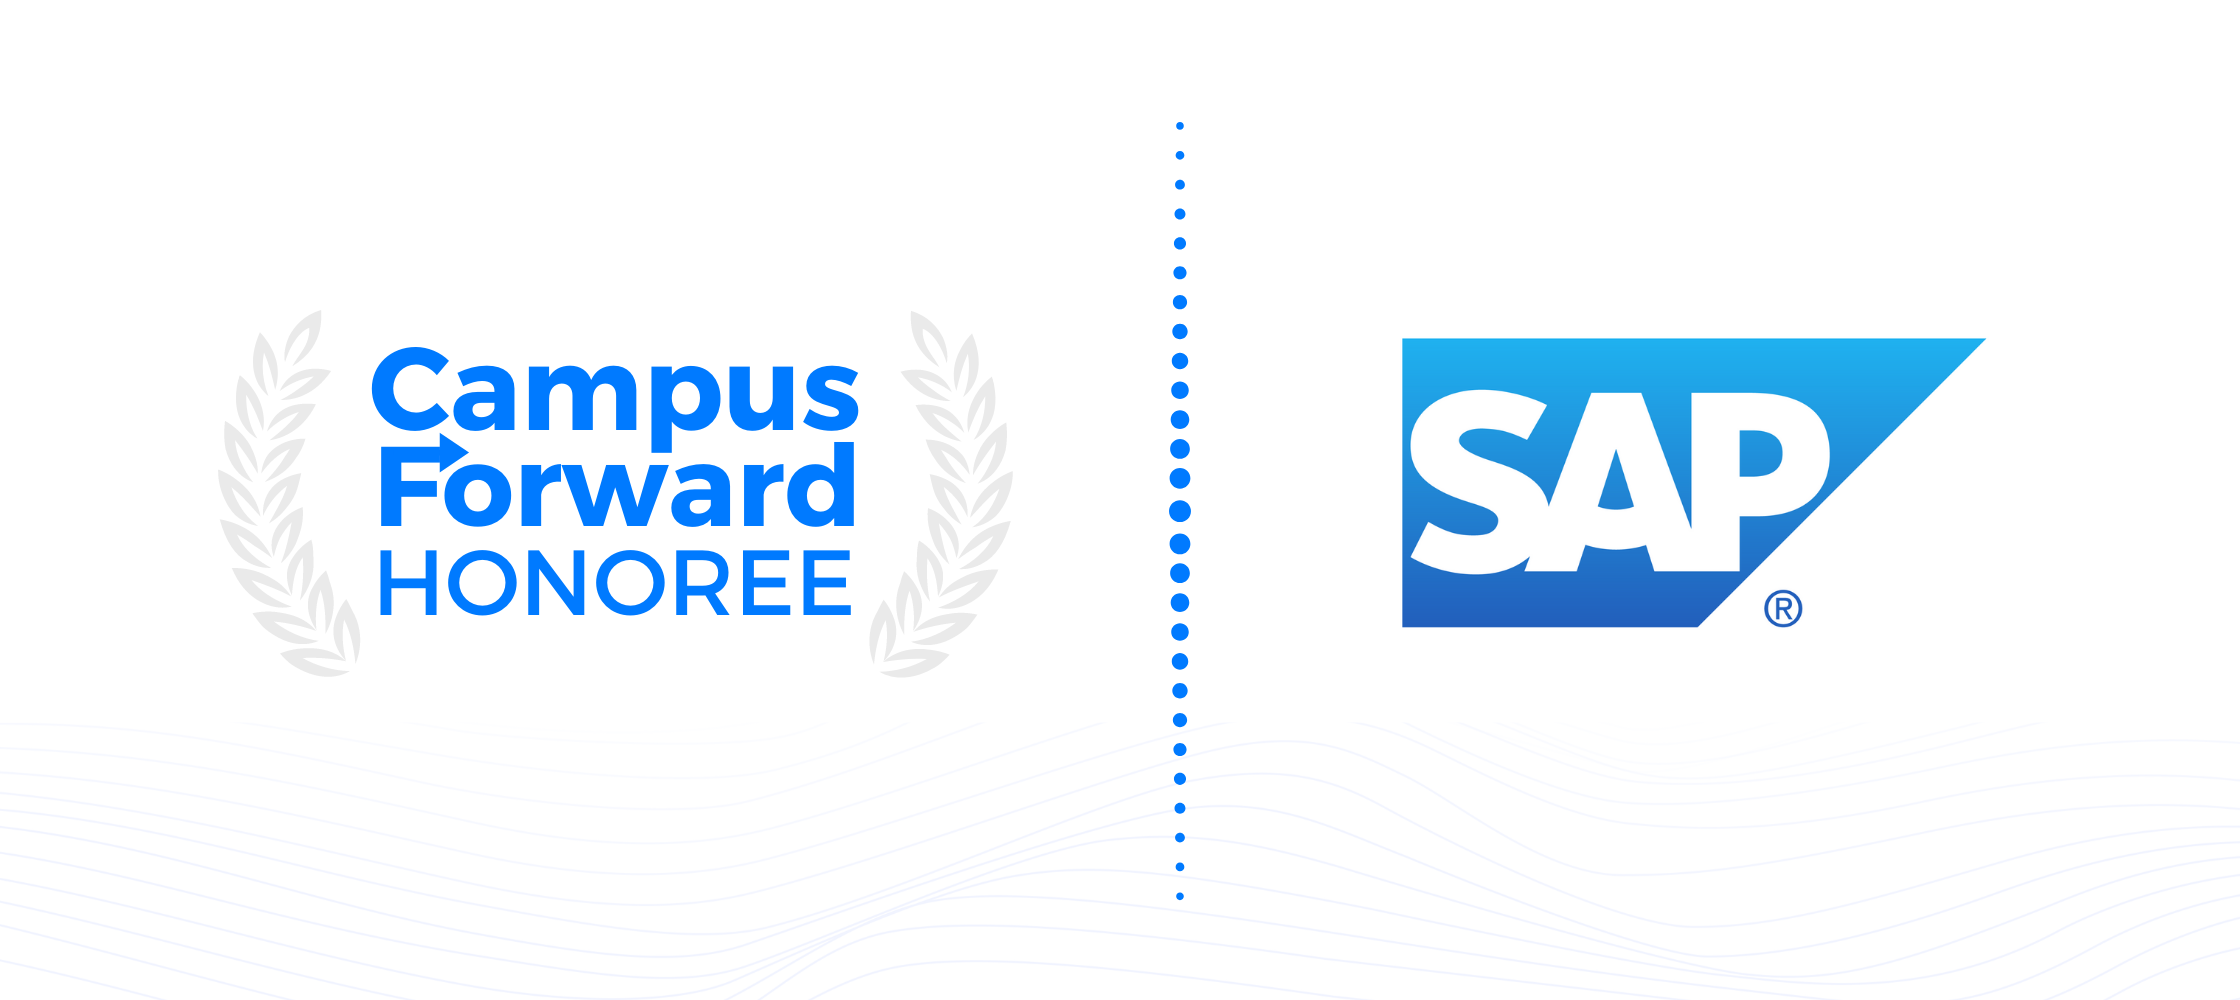 Campus Forward Honoree - SAP